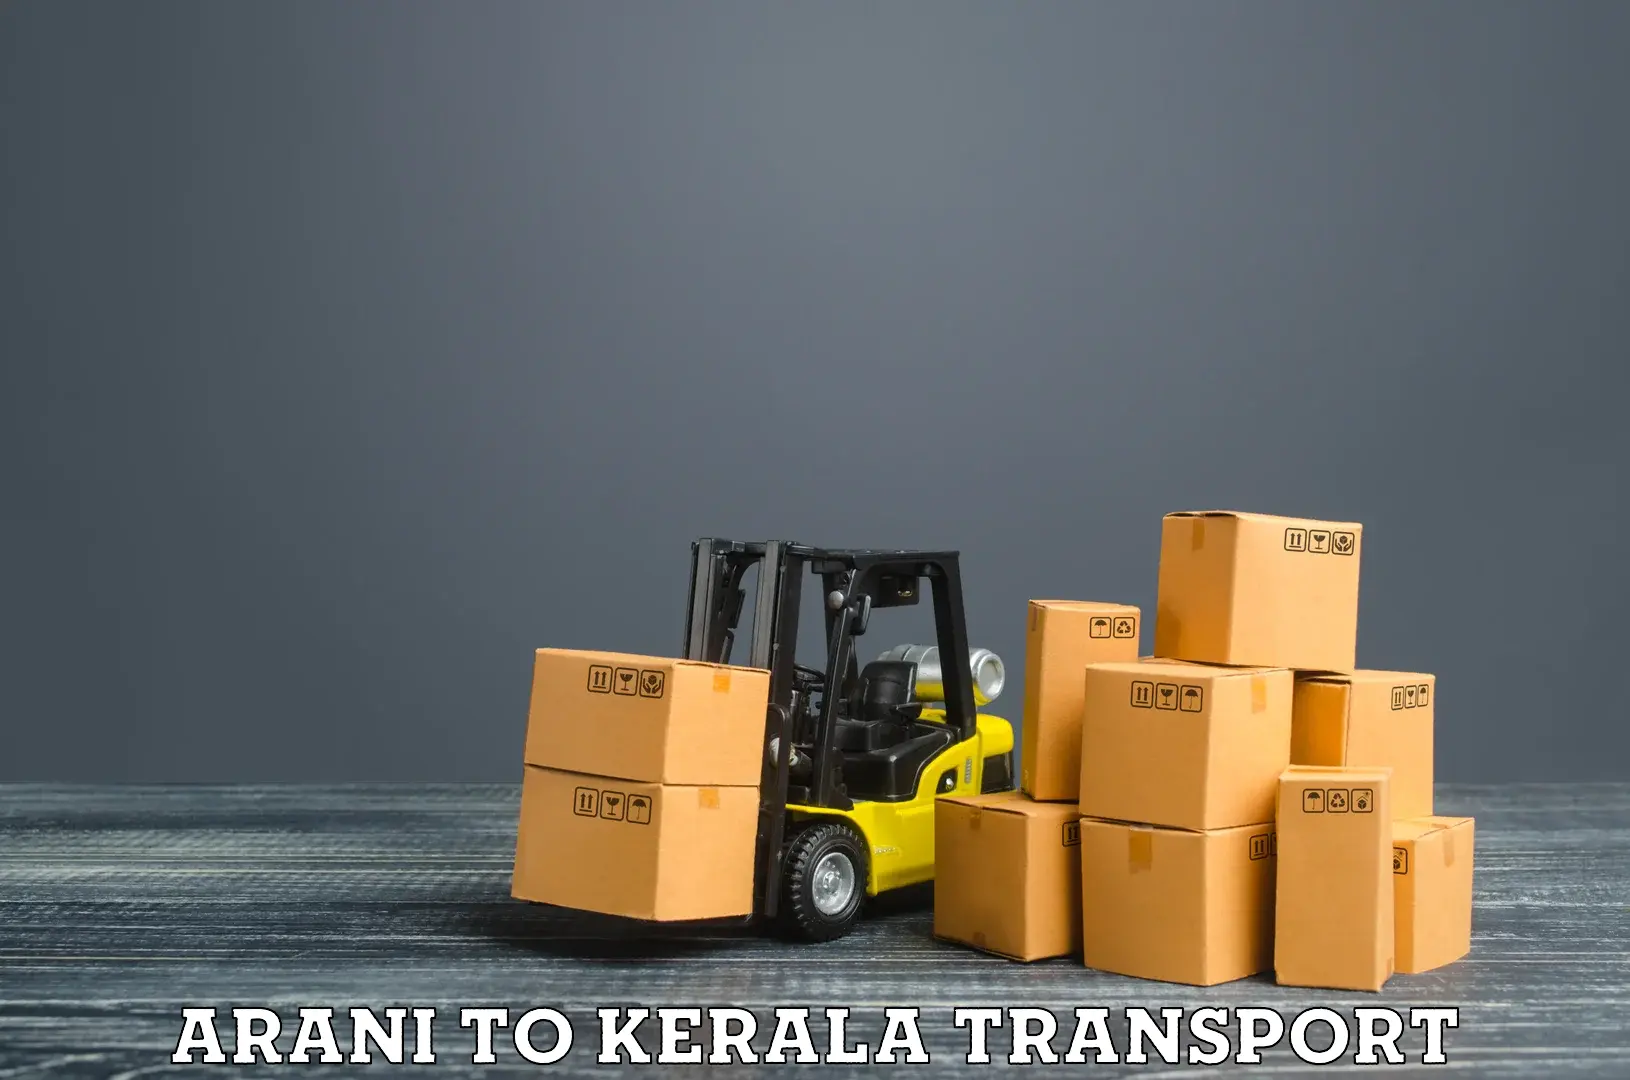 Online transport booking Arani to Kerala